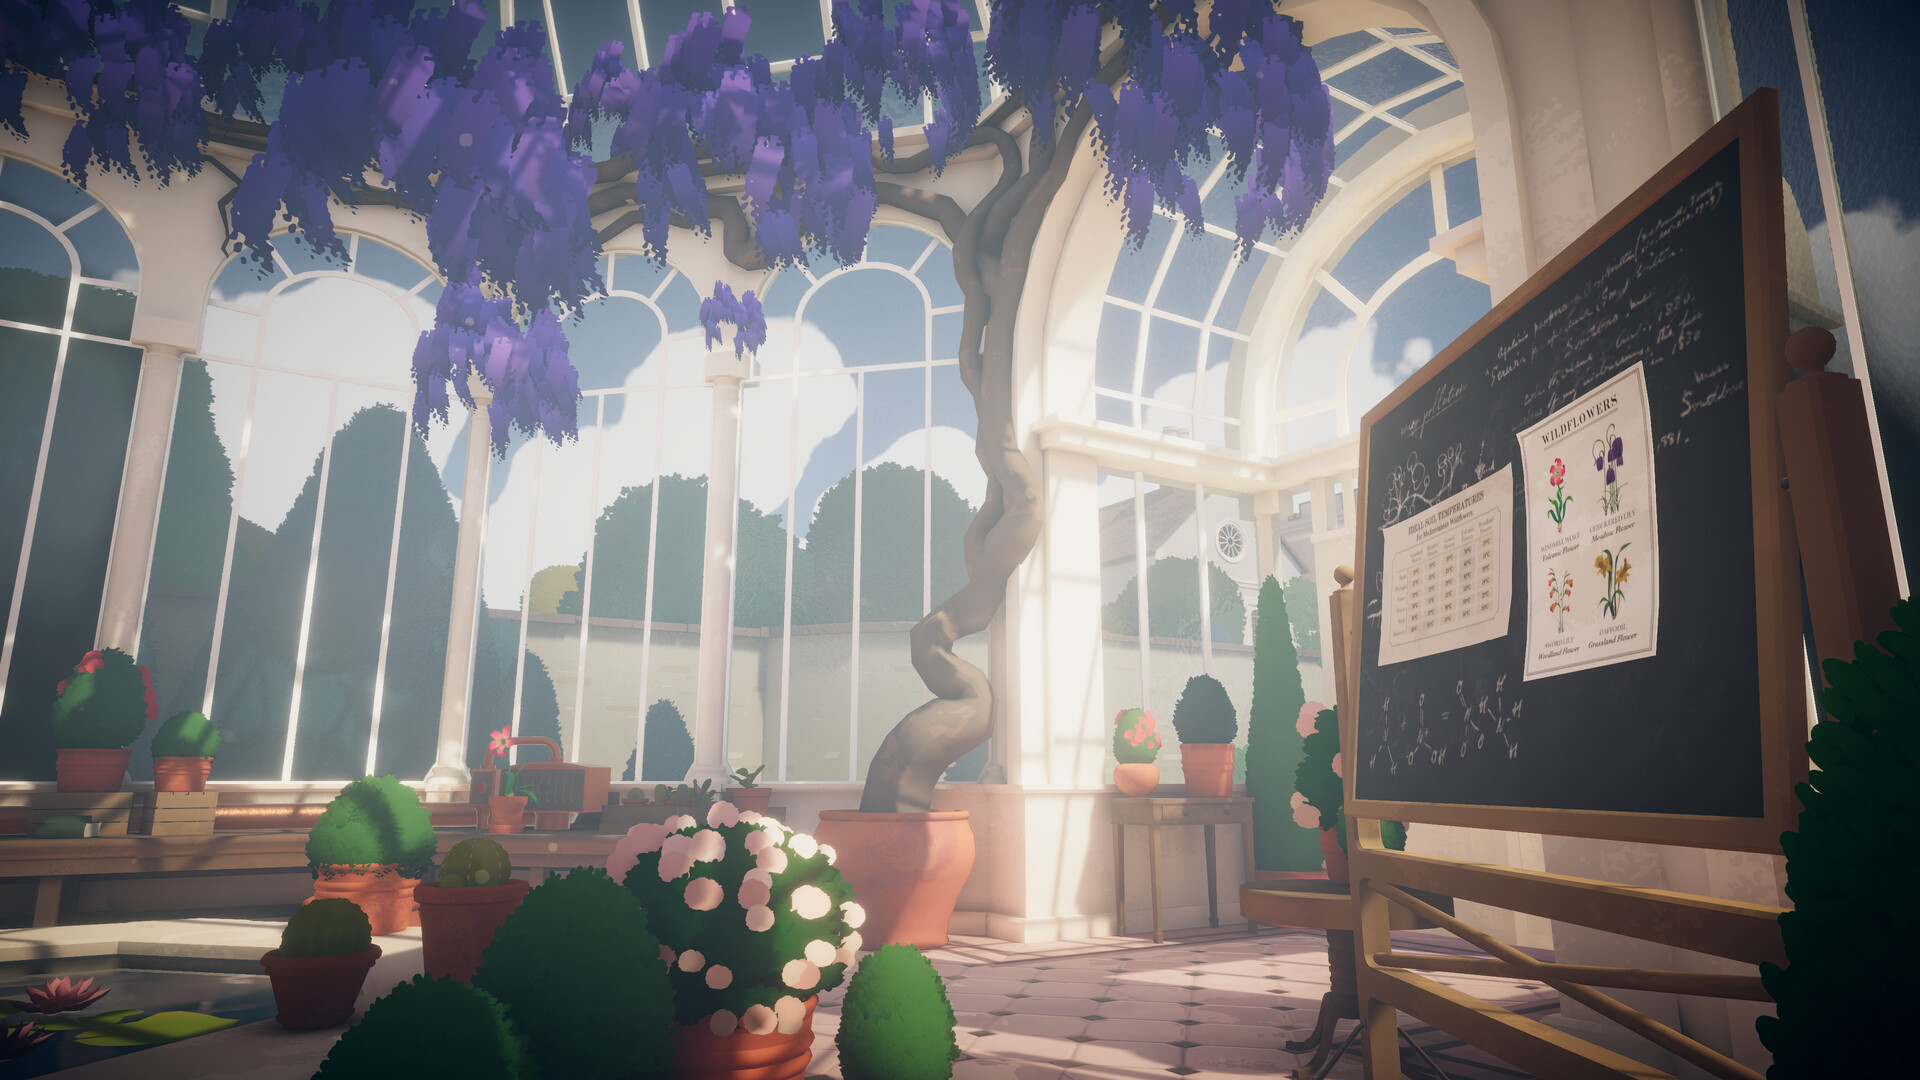 沉浸式模拟教育游戏《植物学庄园》 现已在新品节推出试玩Demo